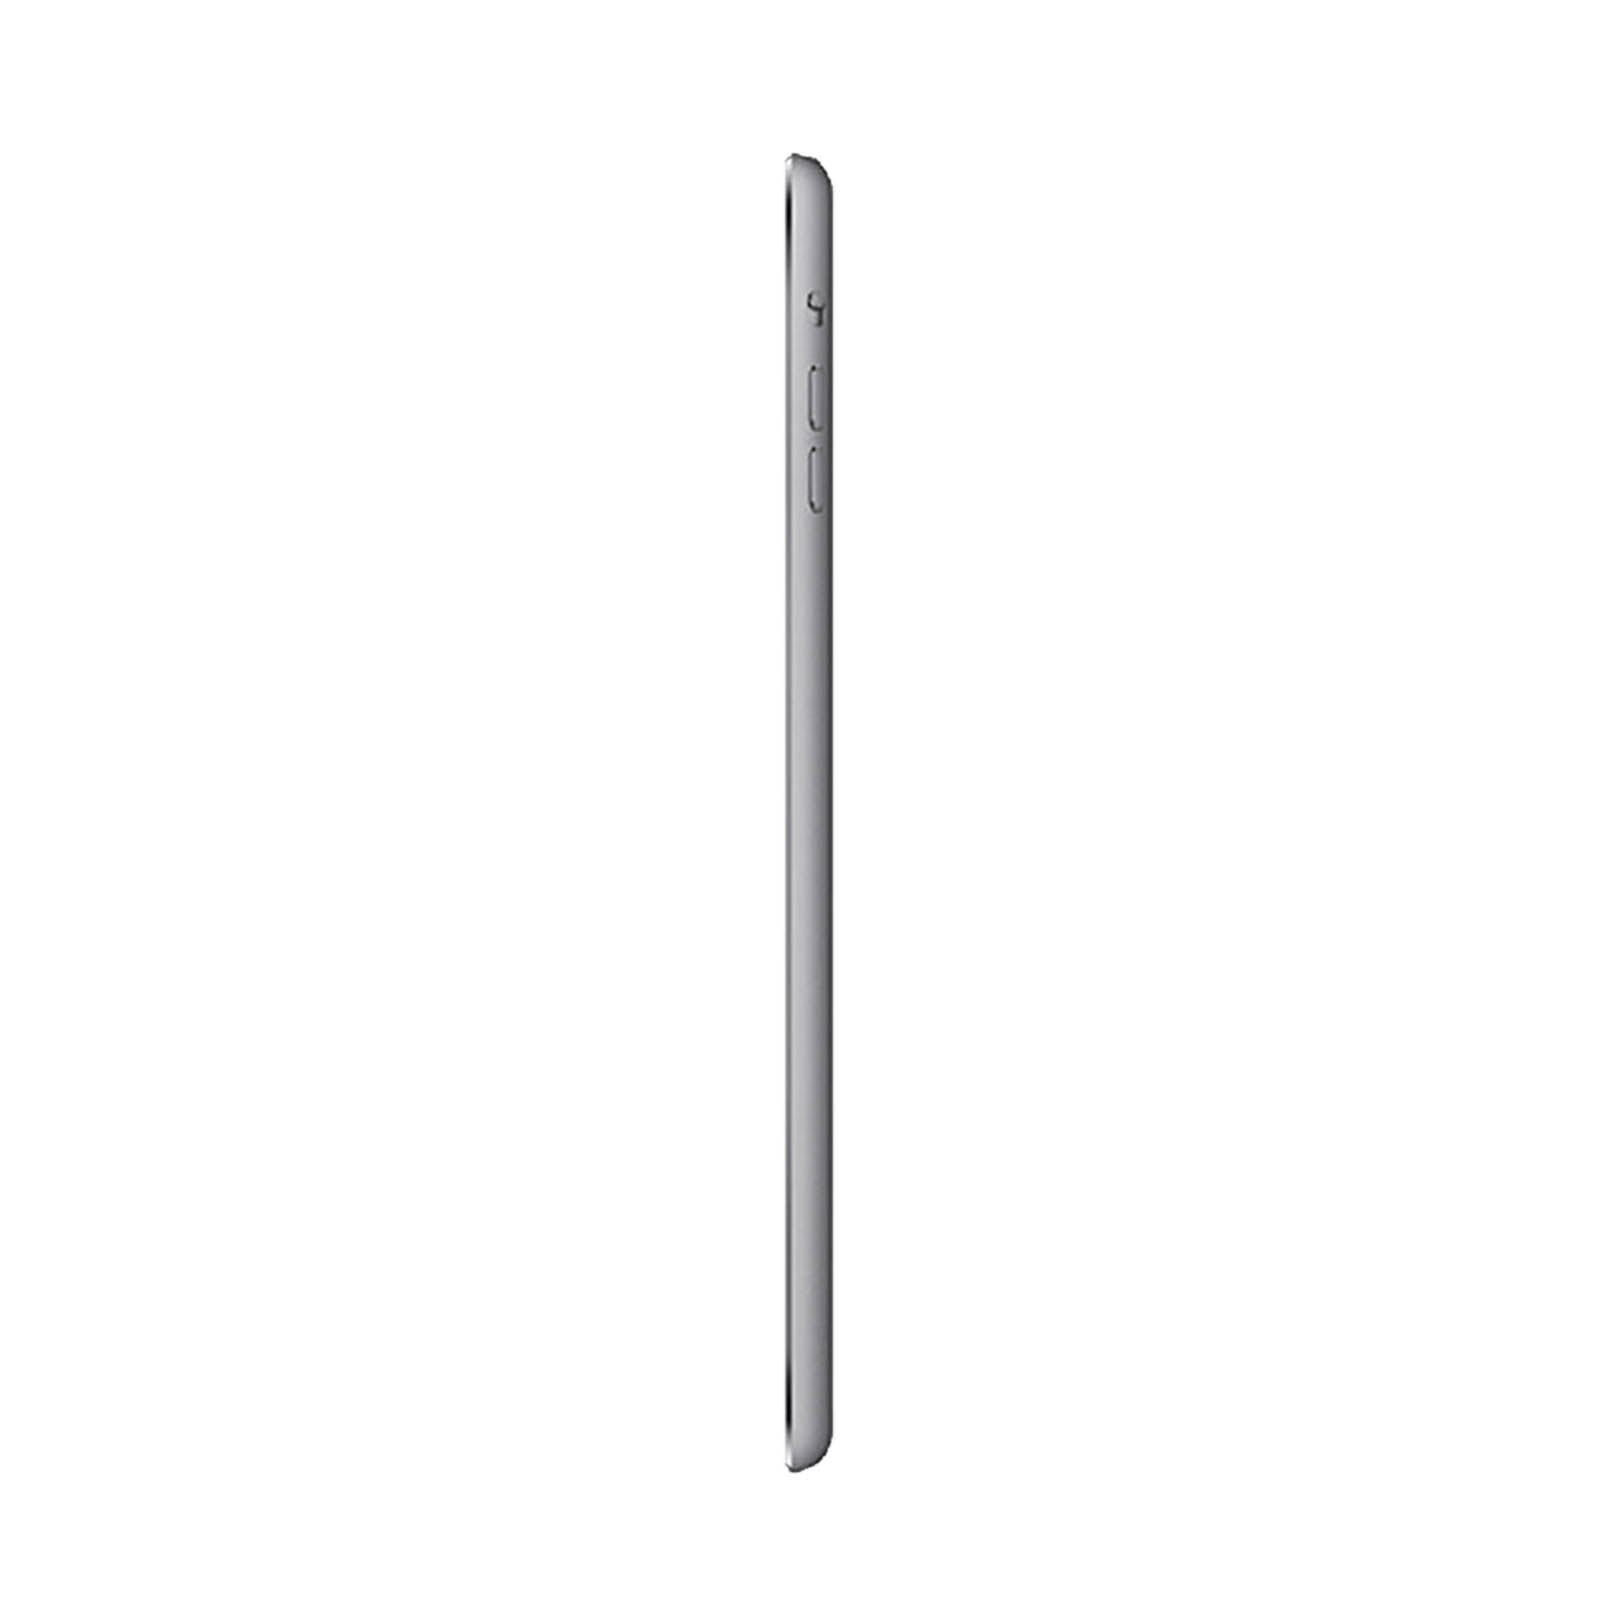 Apple iPad mini 2 32GB Black Fair - Unlocked